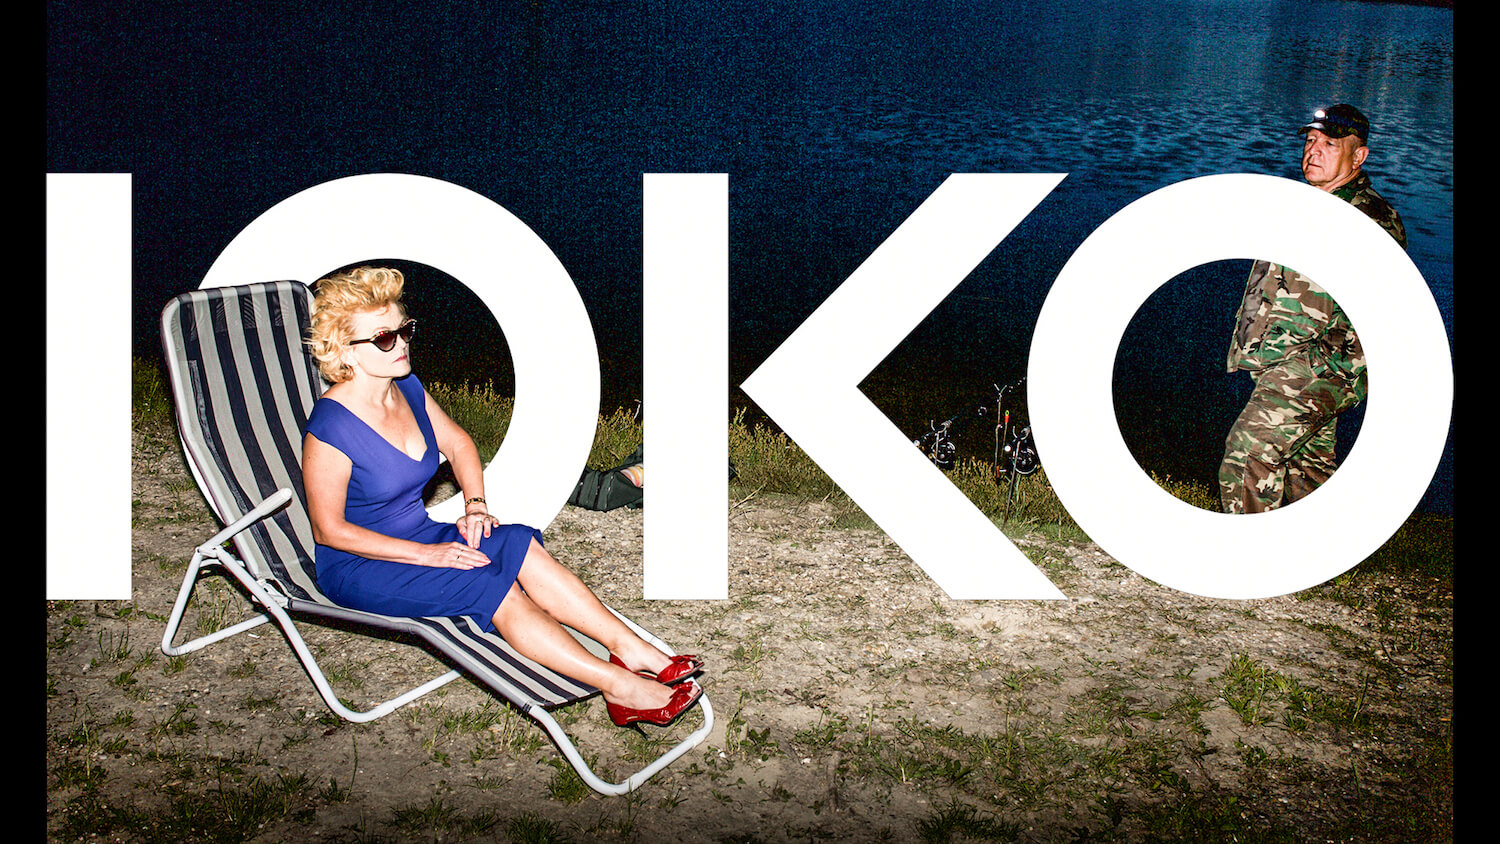 IOKO optika campaign by Maria Pincikova